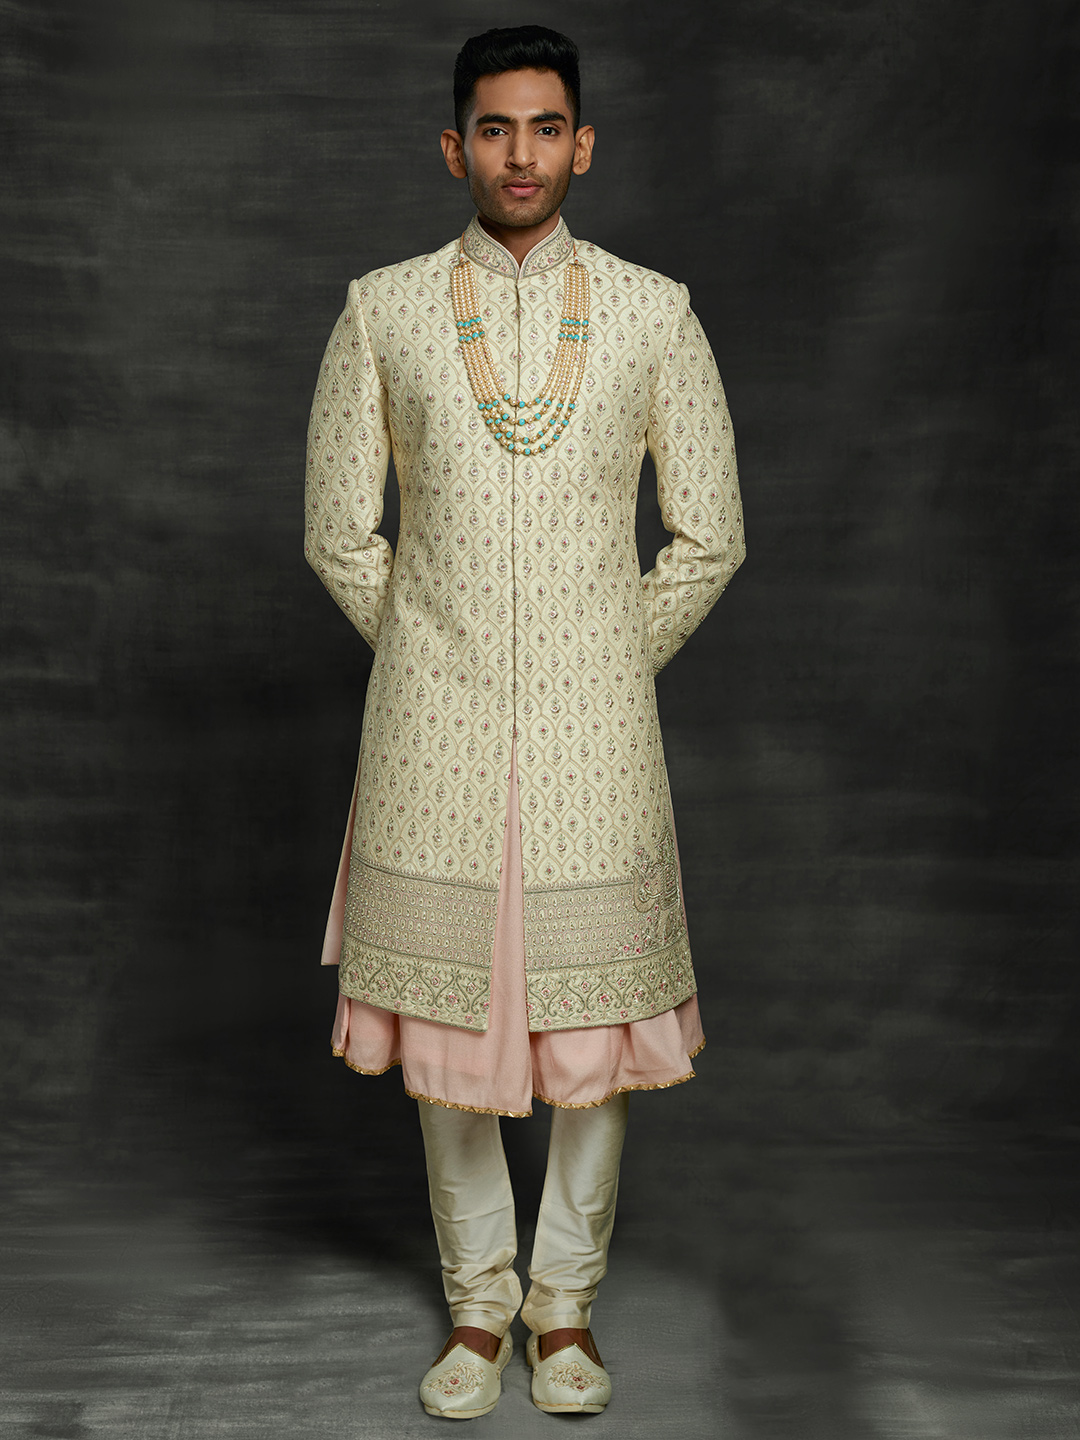 mens wedding outfit sherwani